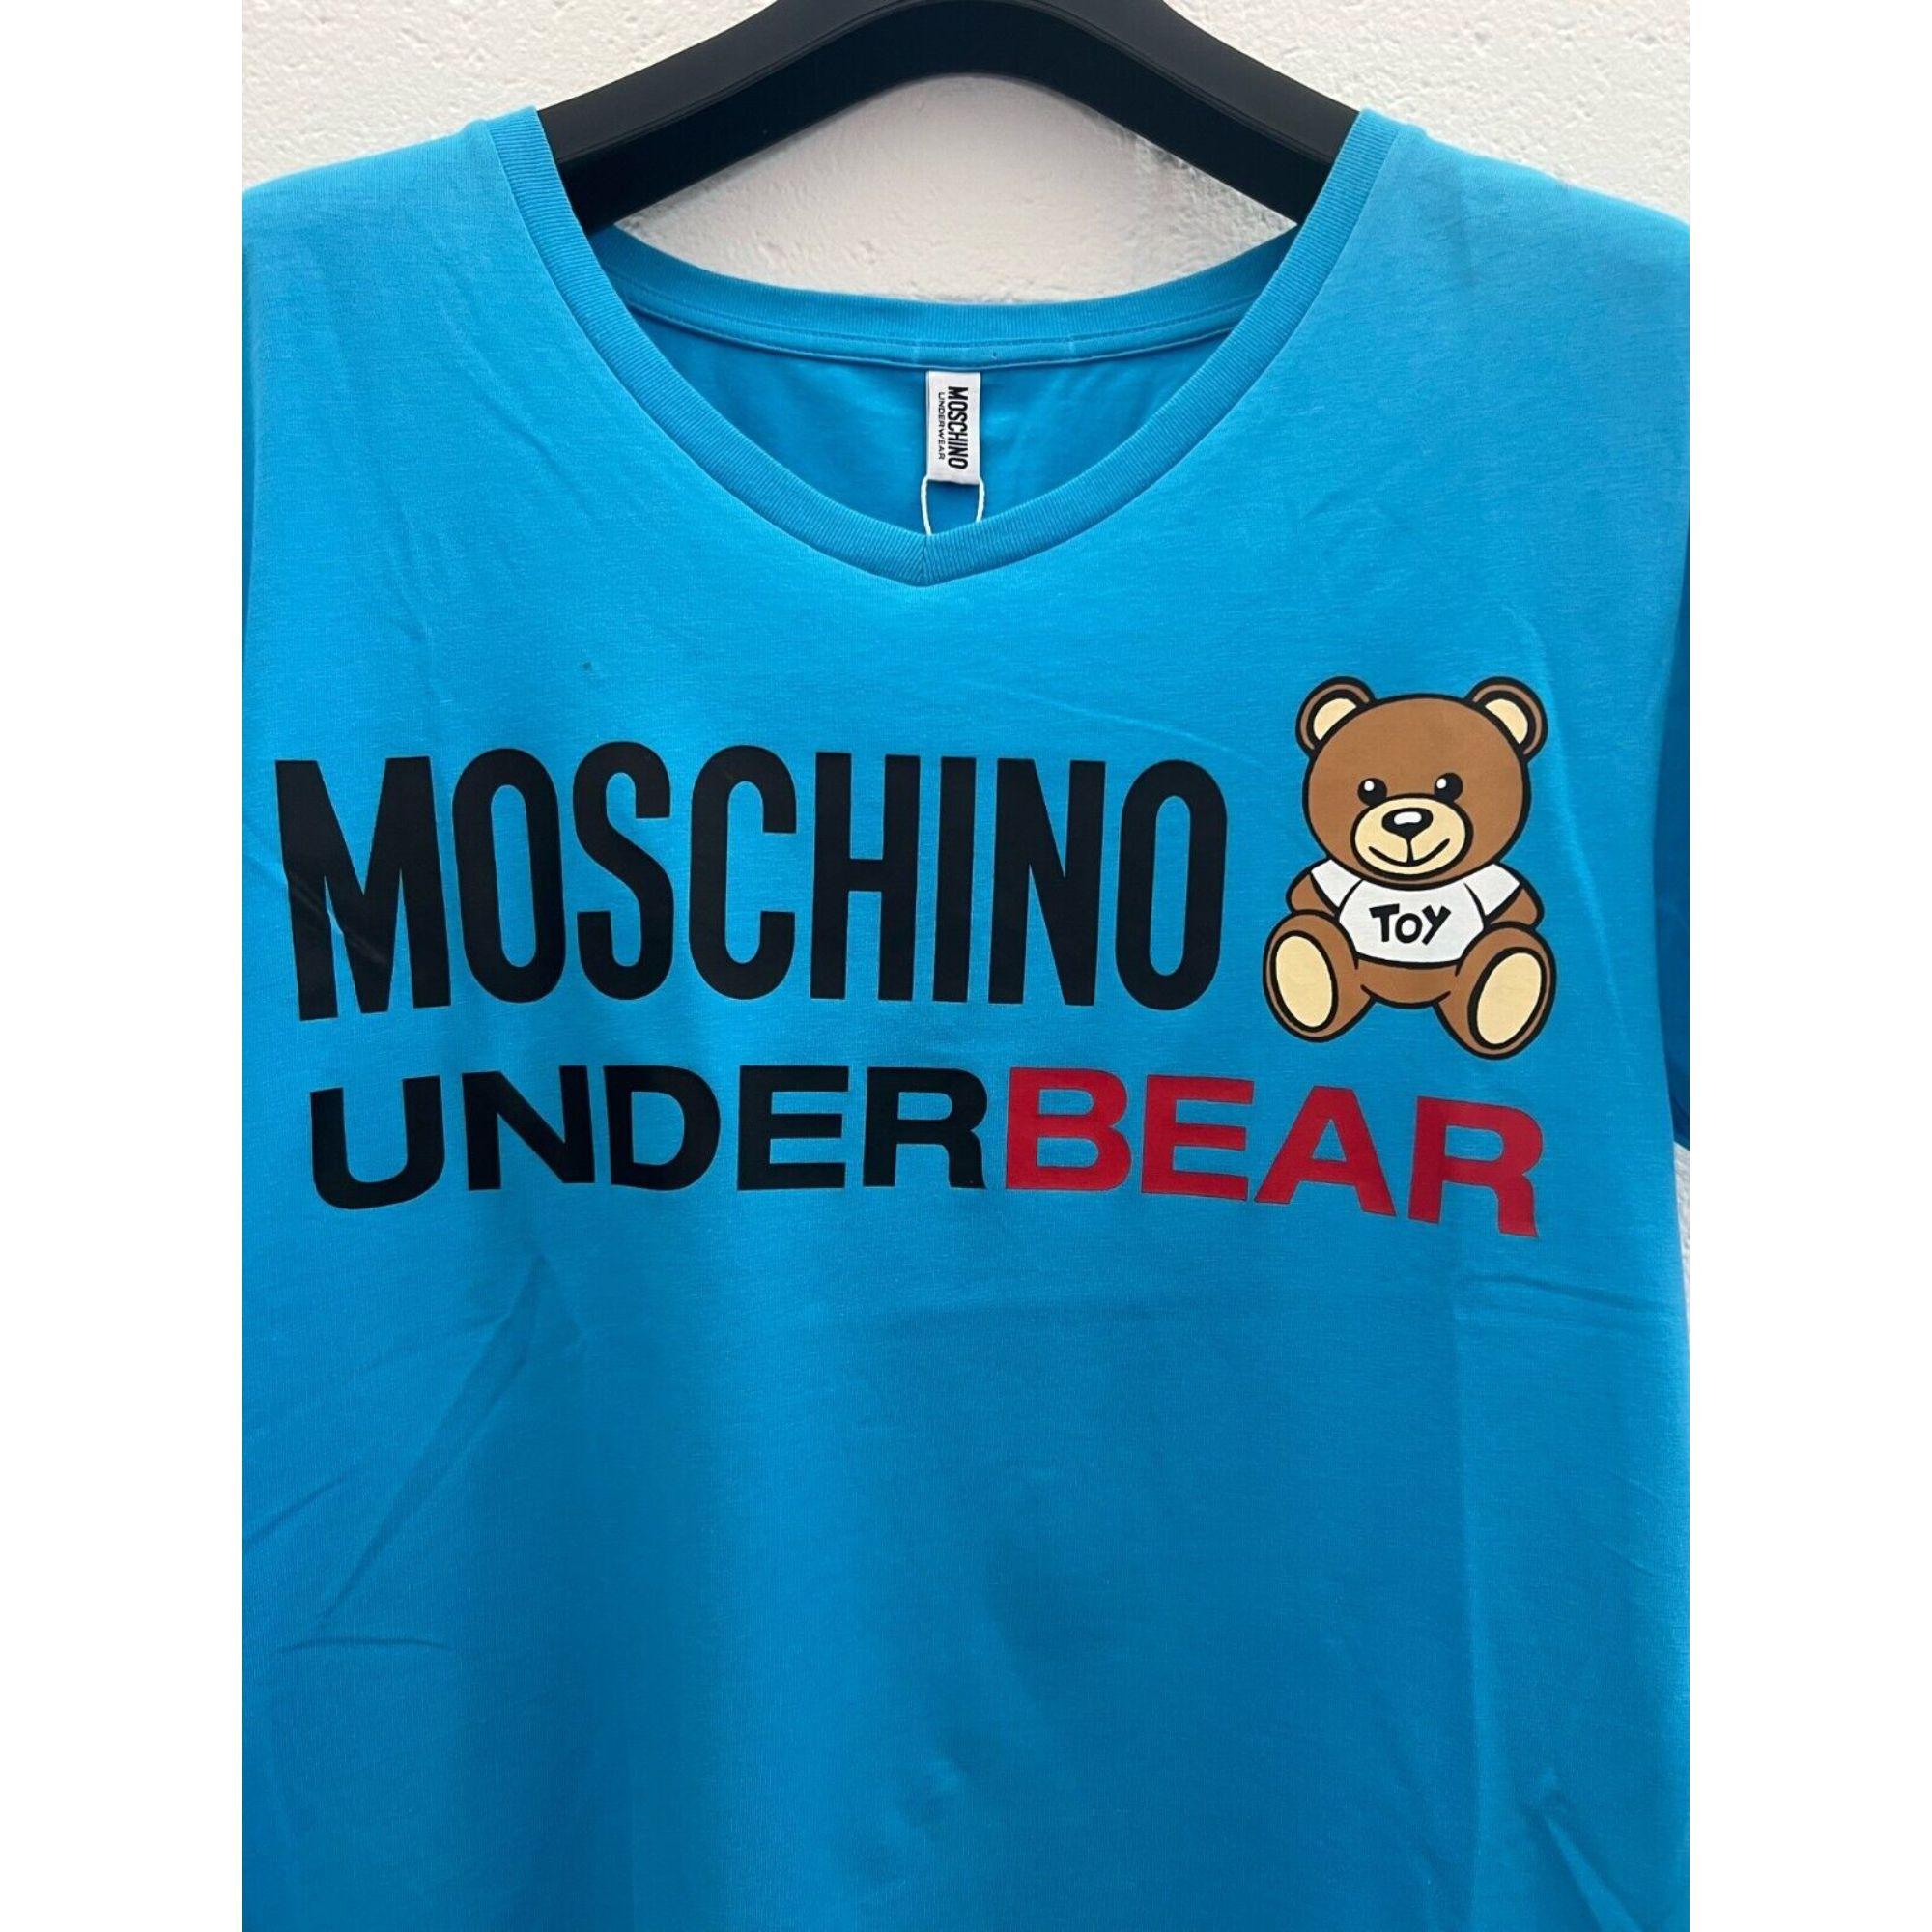 Blue SS20 Moschino Underwear Underbear Teddy Bear T-shirt by Jeremy Scott, Size L For Sale